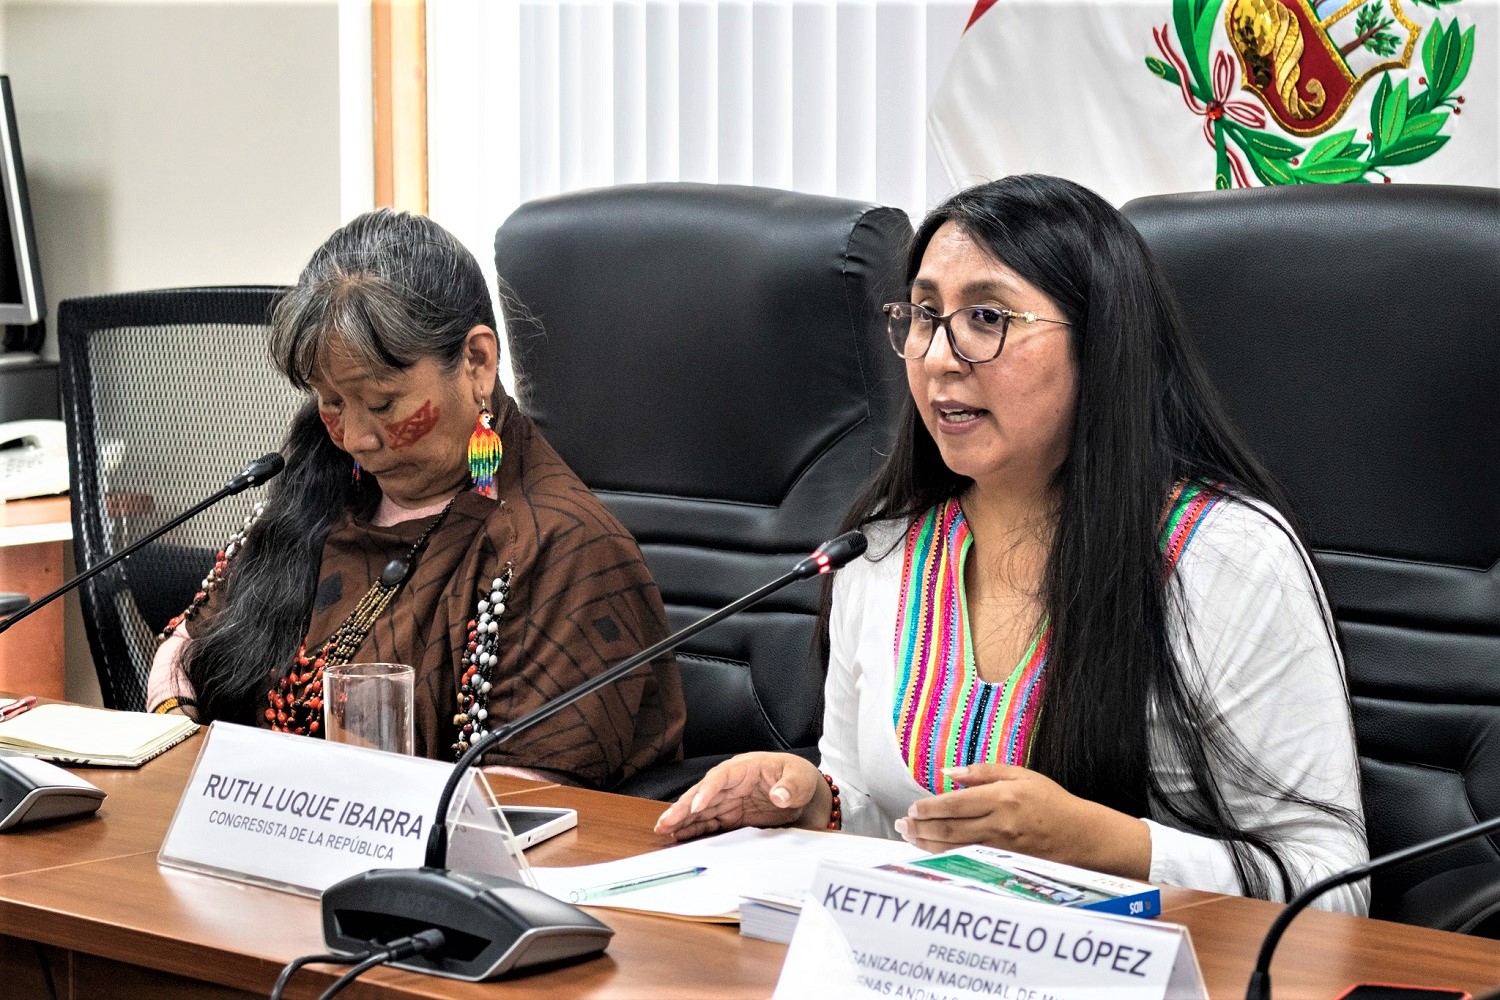 Se requiere que el Ejecutivo garantizar derechos fundamentales de los pueblos indígenas, sostuvo Congresista Ruth Luque Ibarra.